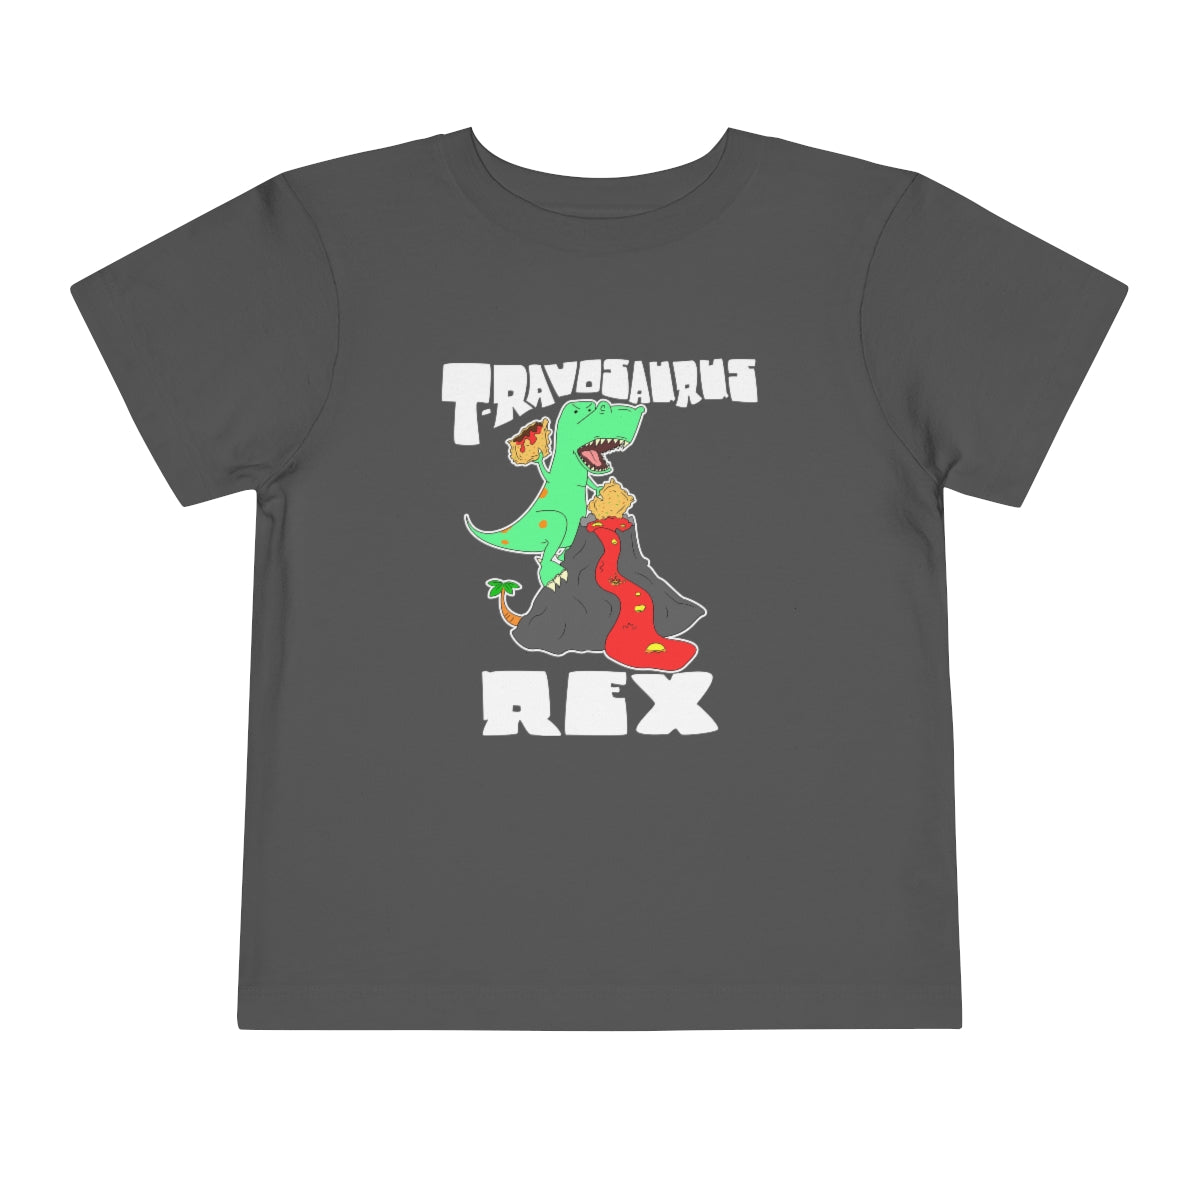 T-Ravosaurus Rex Toddler